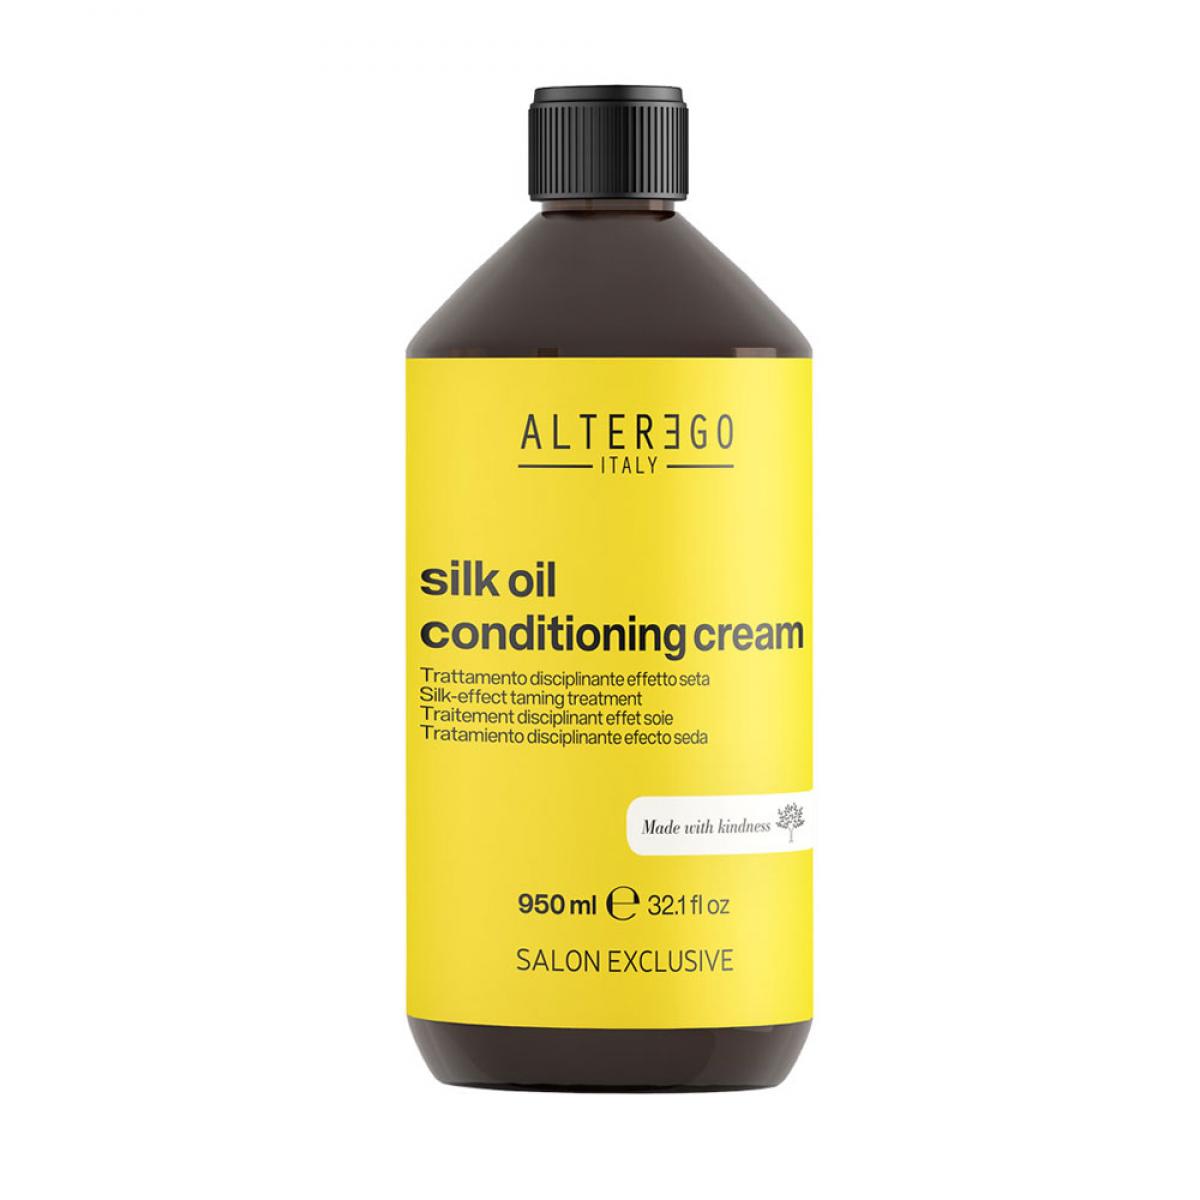 کرم درمان کننده سیلک اویل - Silk oil conditioning cream